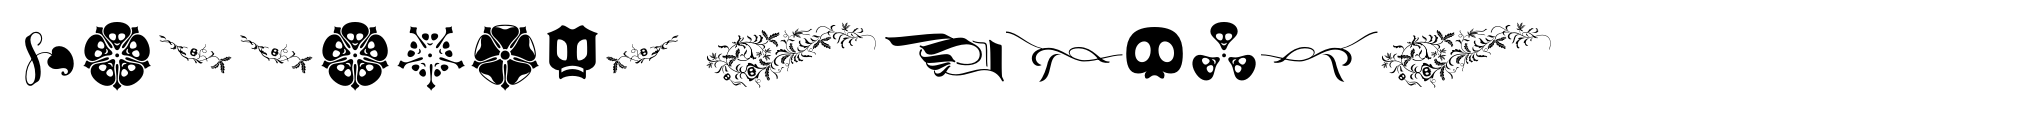 Wittingau Symbols image